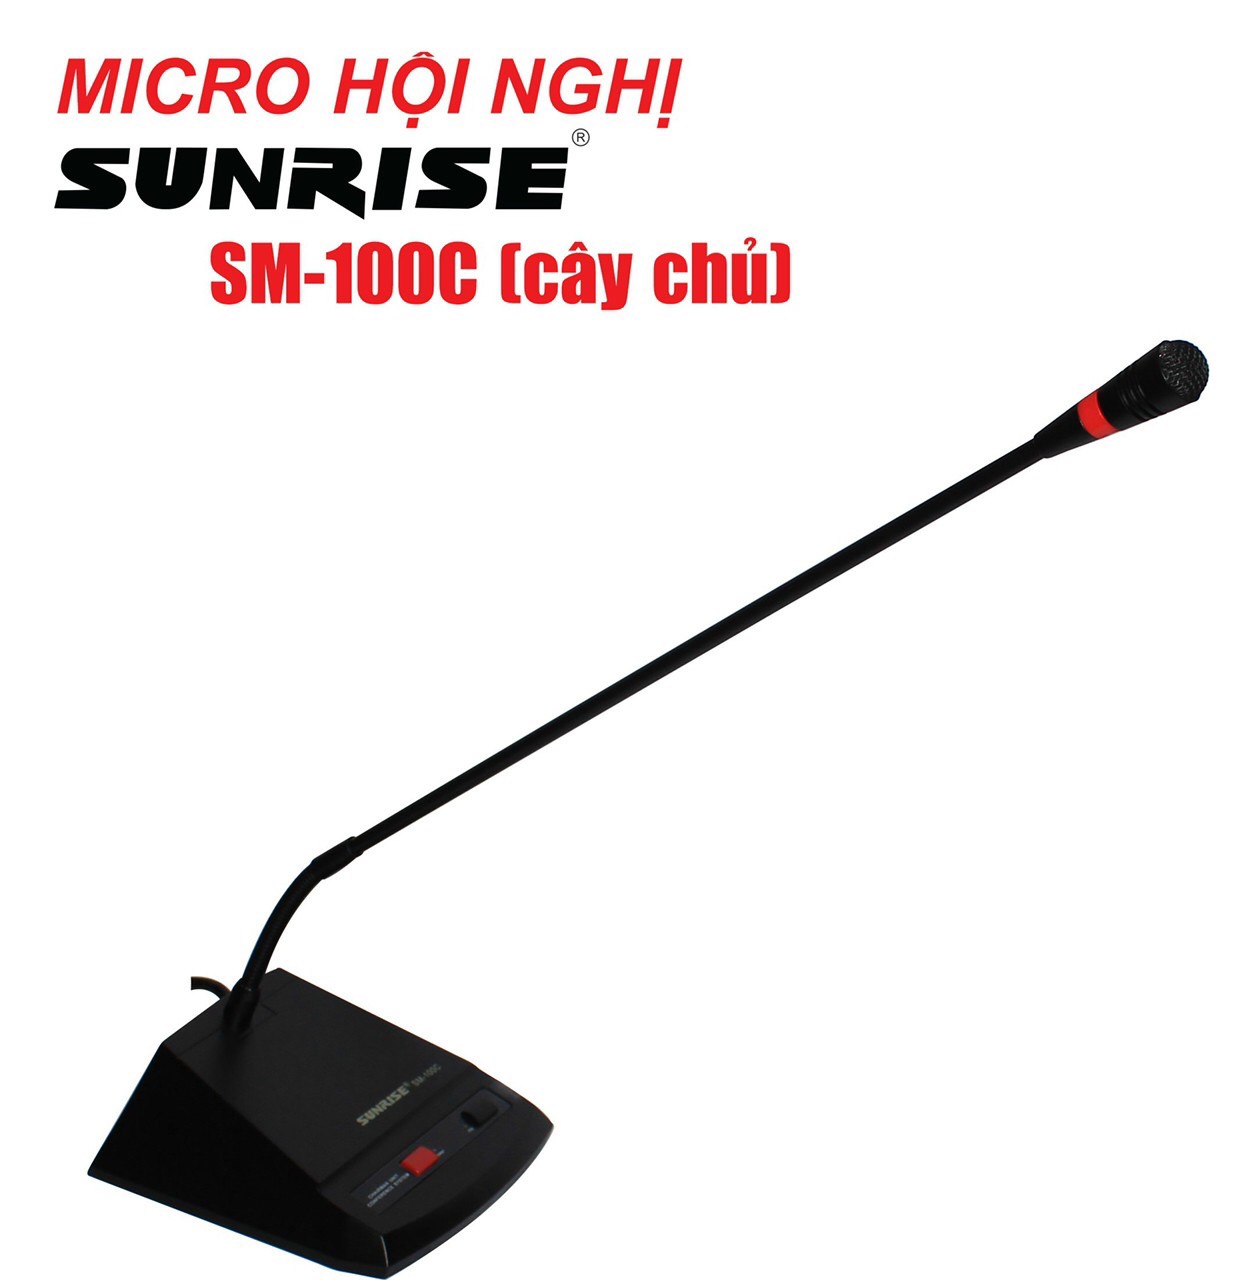 Micro hội nghị Sunrise SM-100C